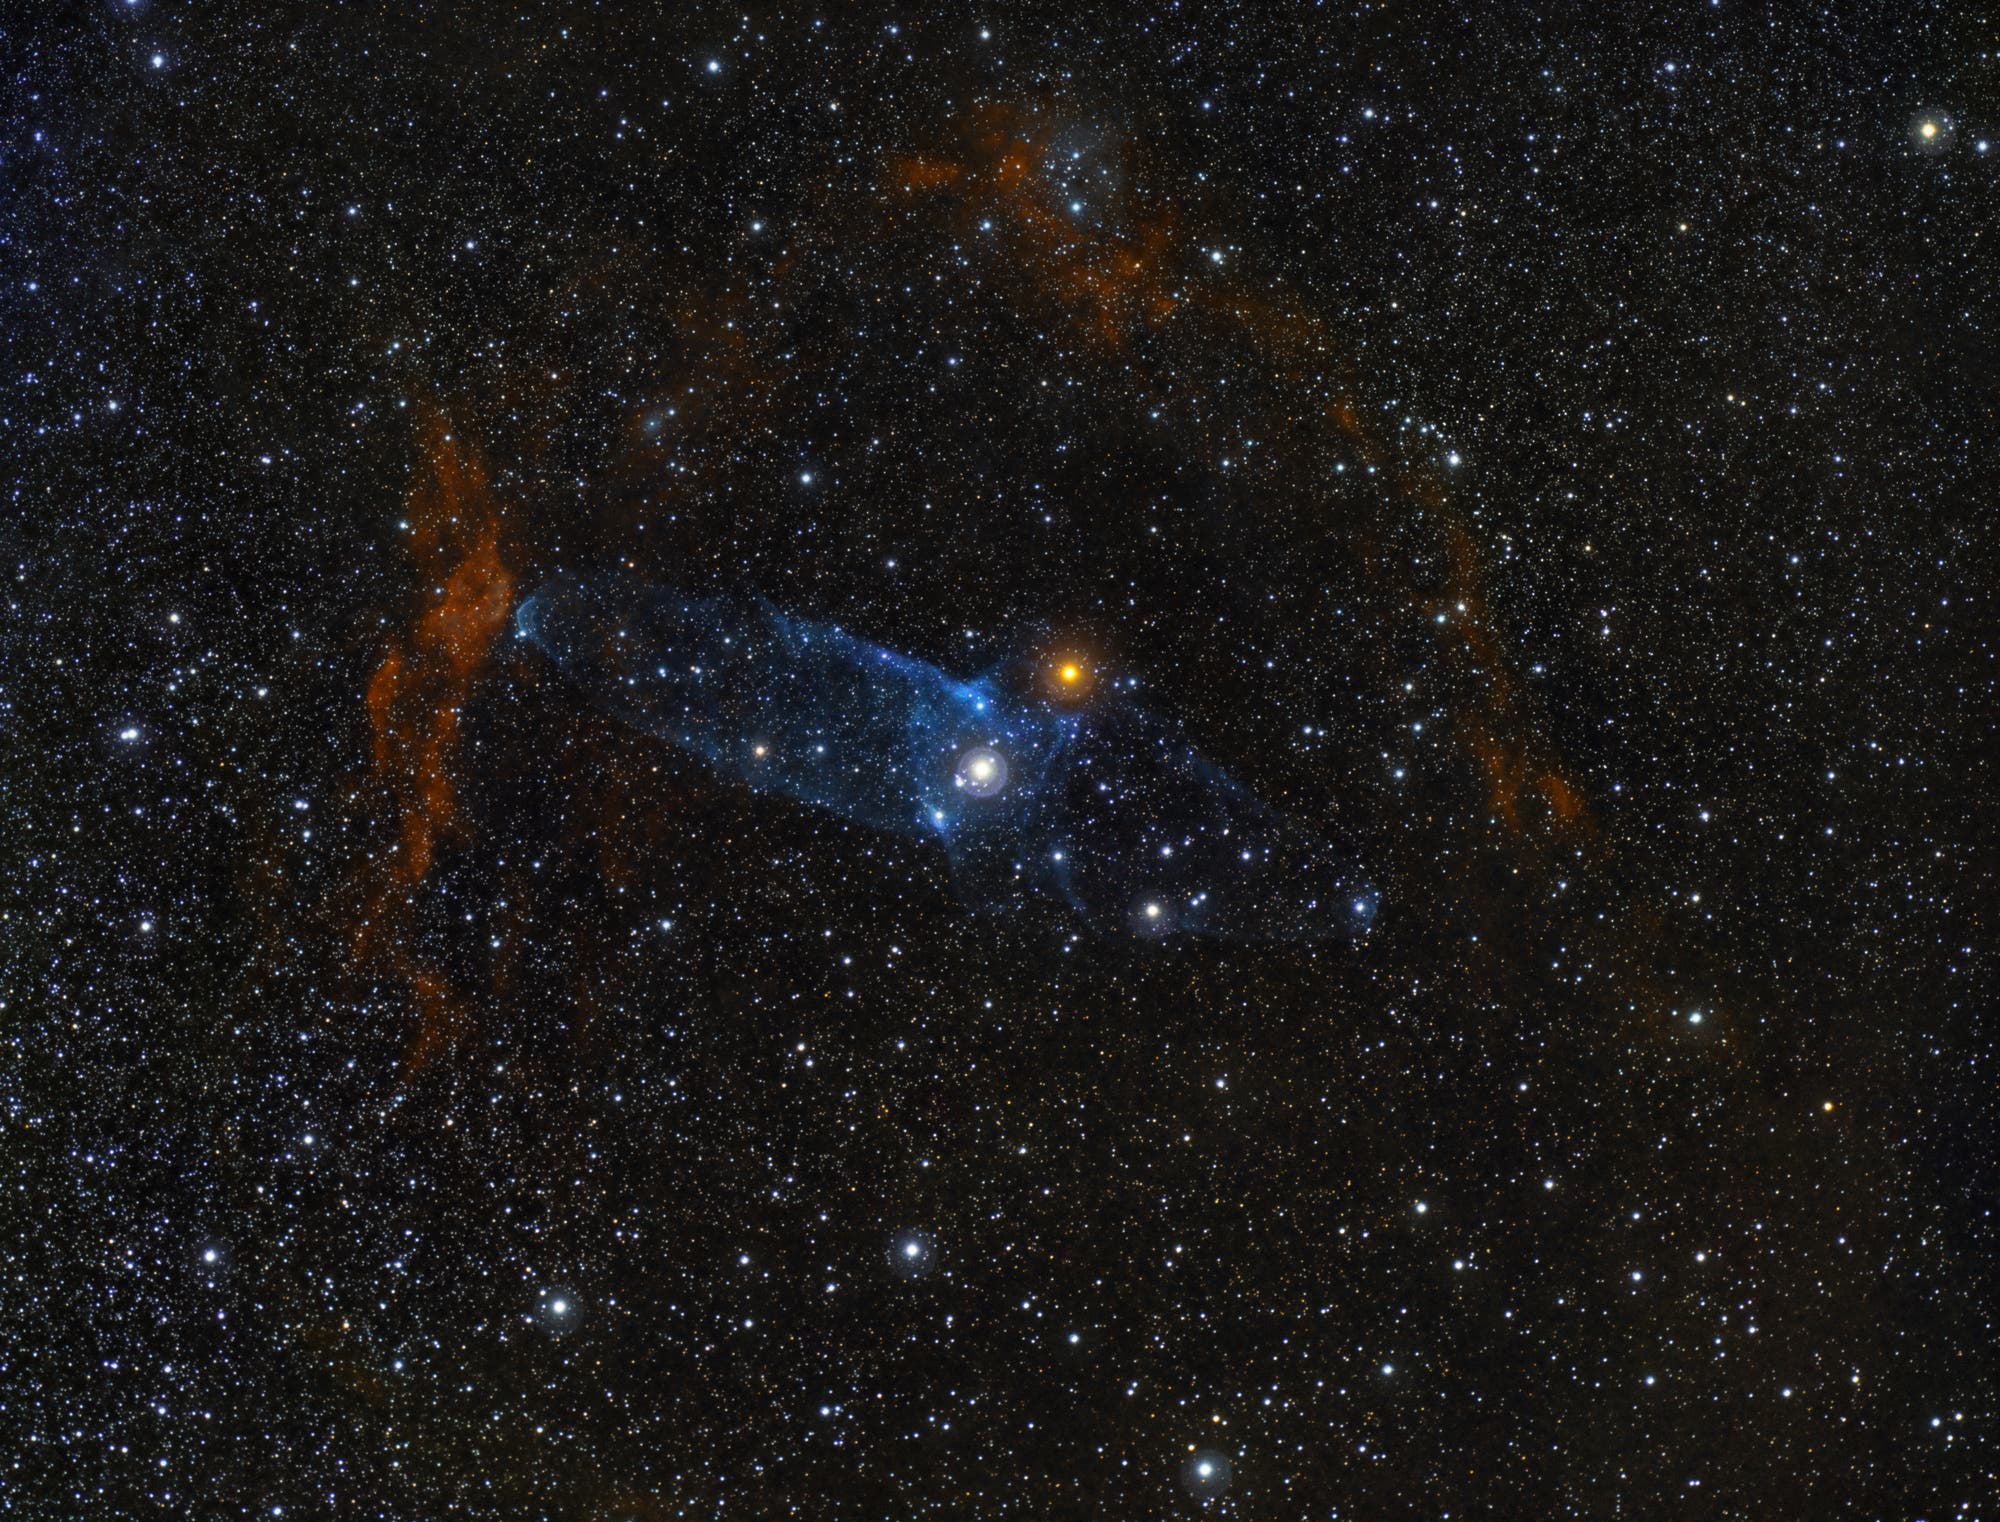 Squid Nebula OU4 in SHO